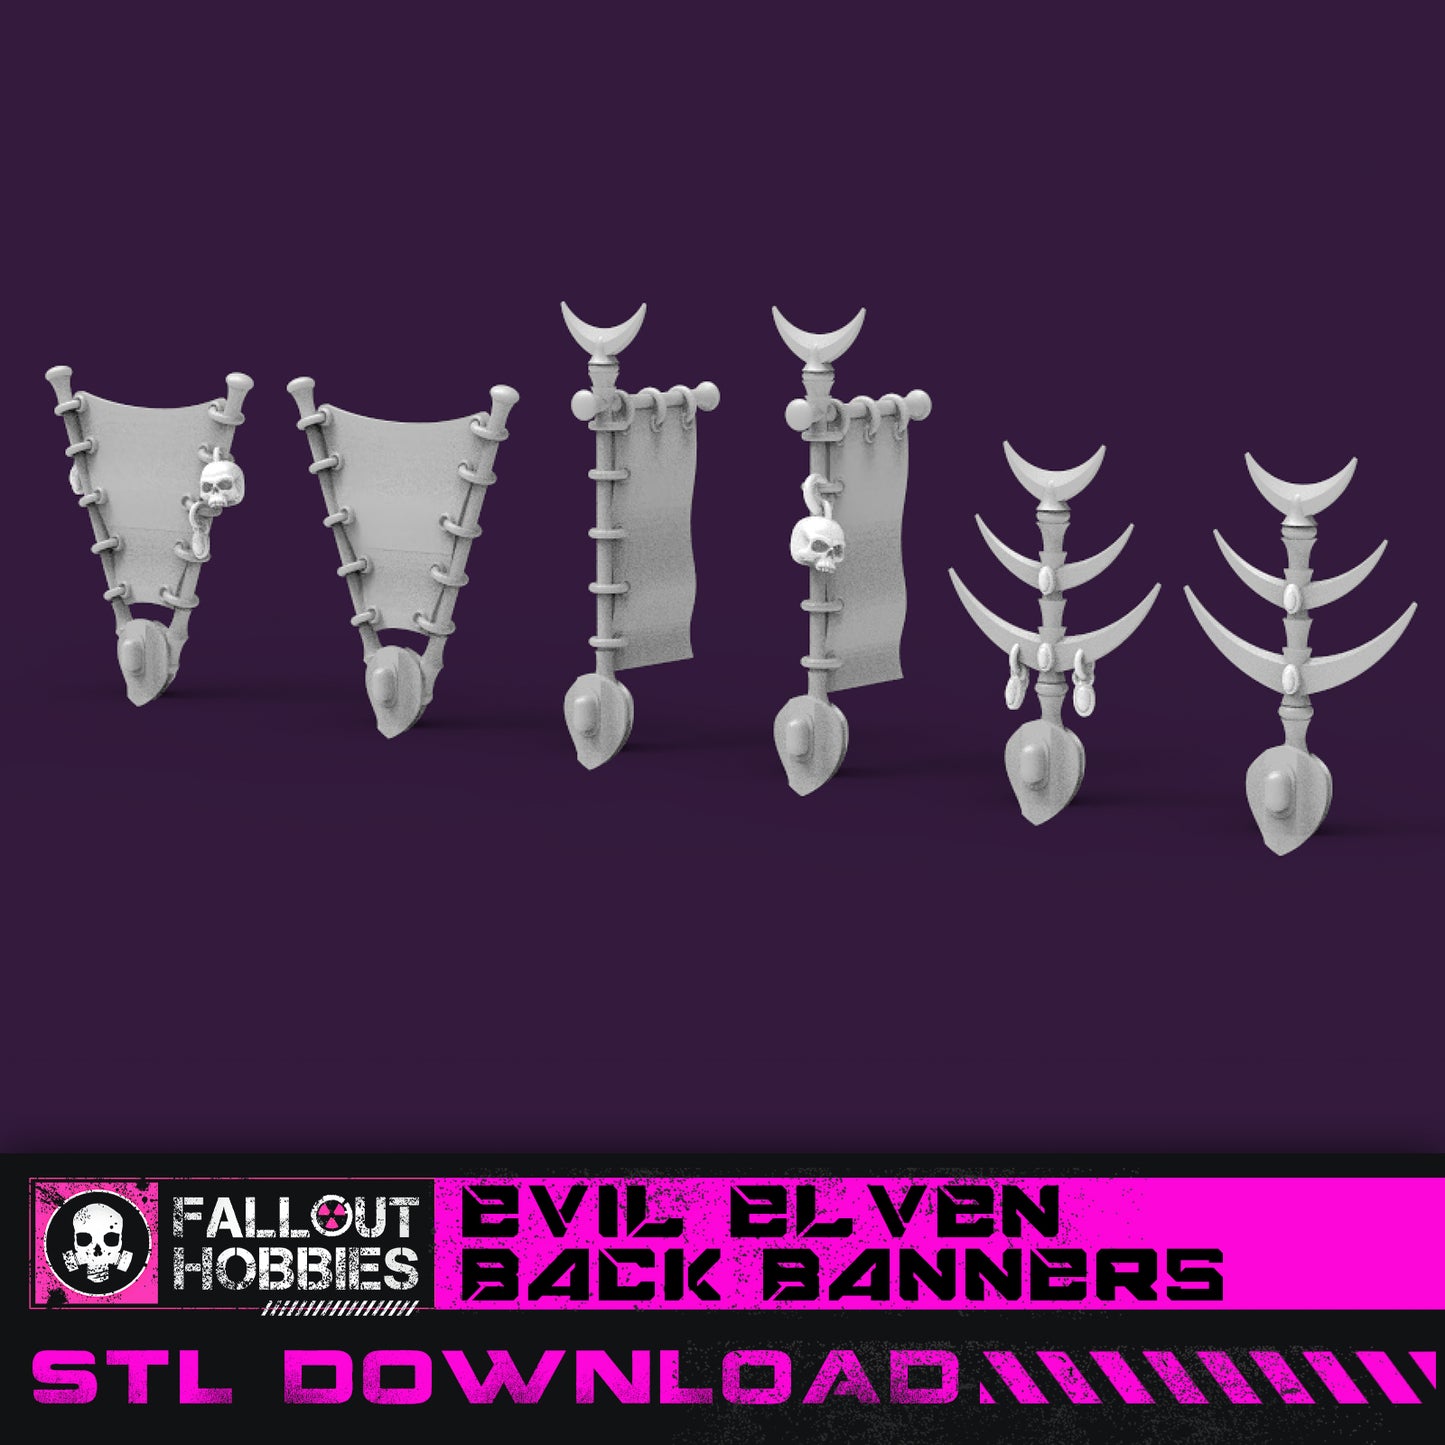 Evil Elven Back Banners STL File Download